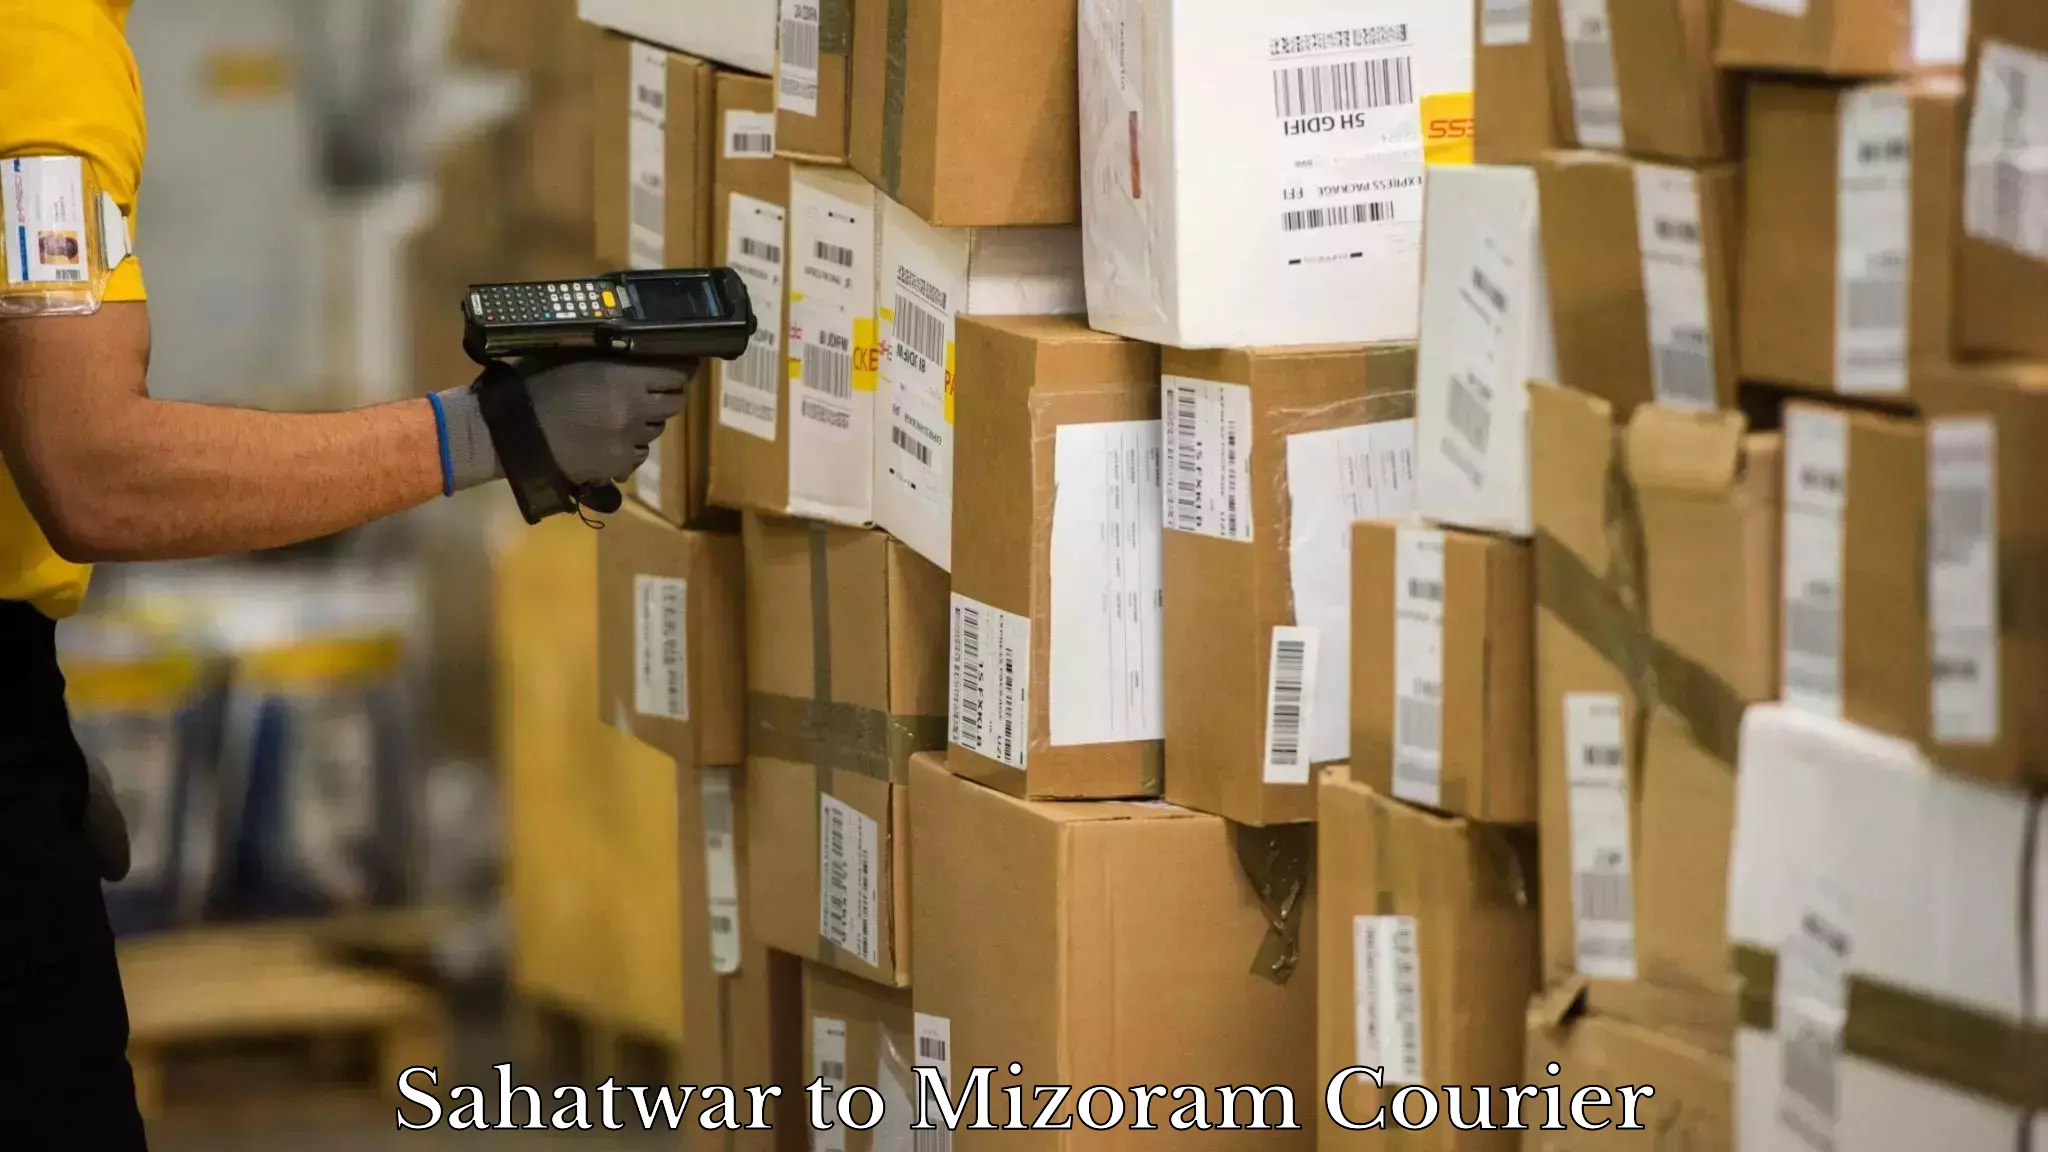 Express logistics providers Sahatwar to Mizoram